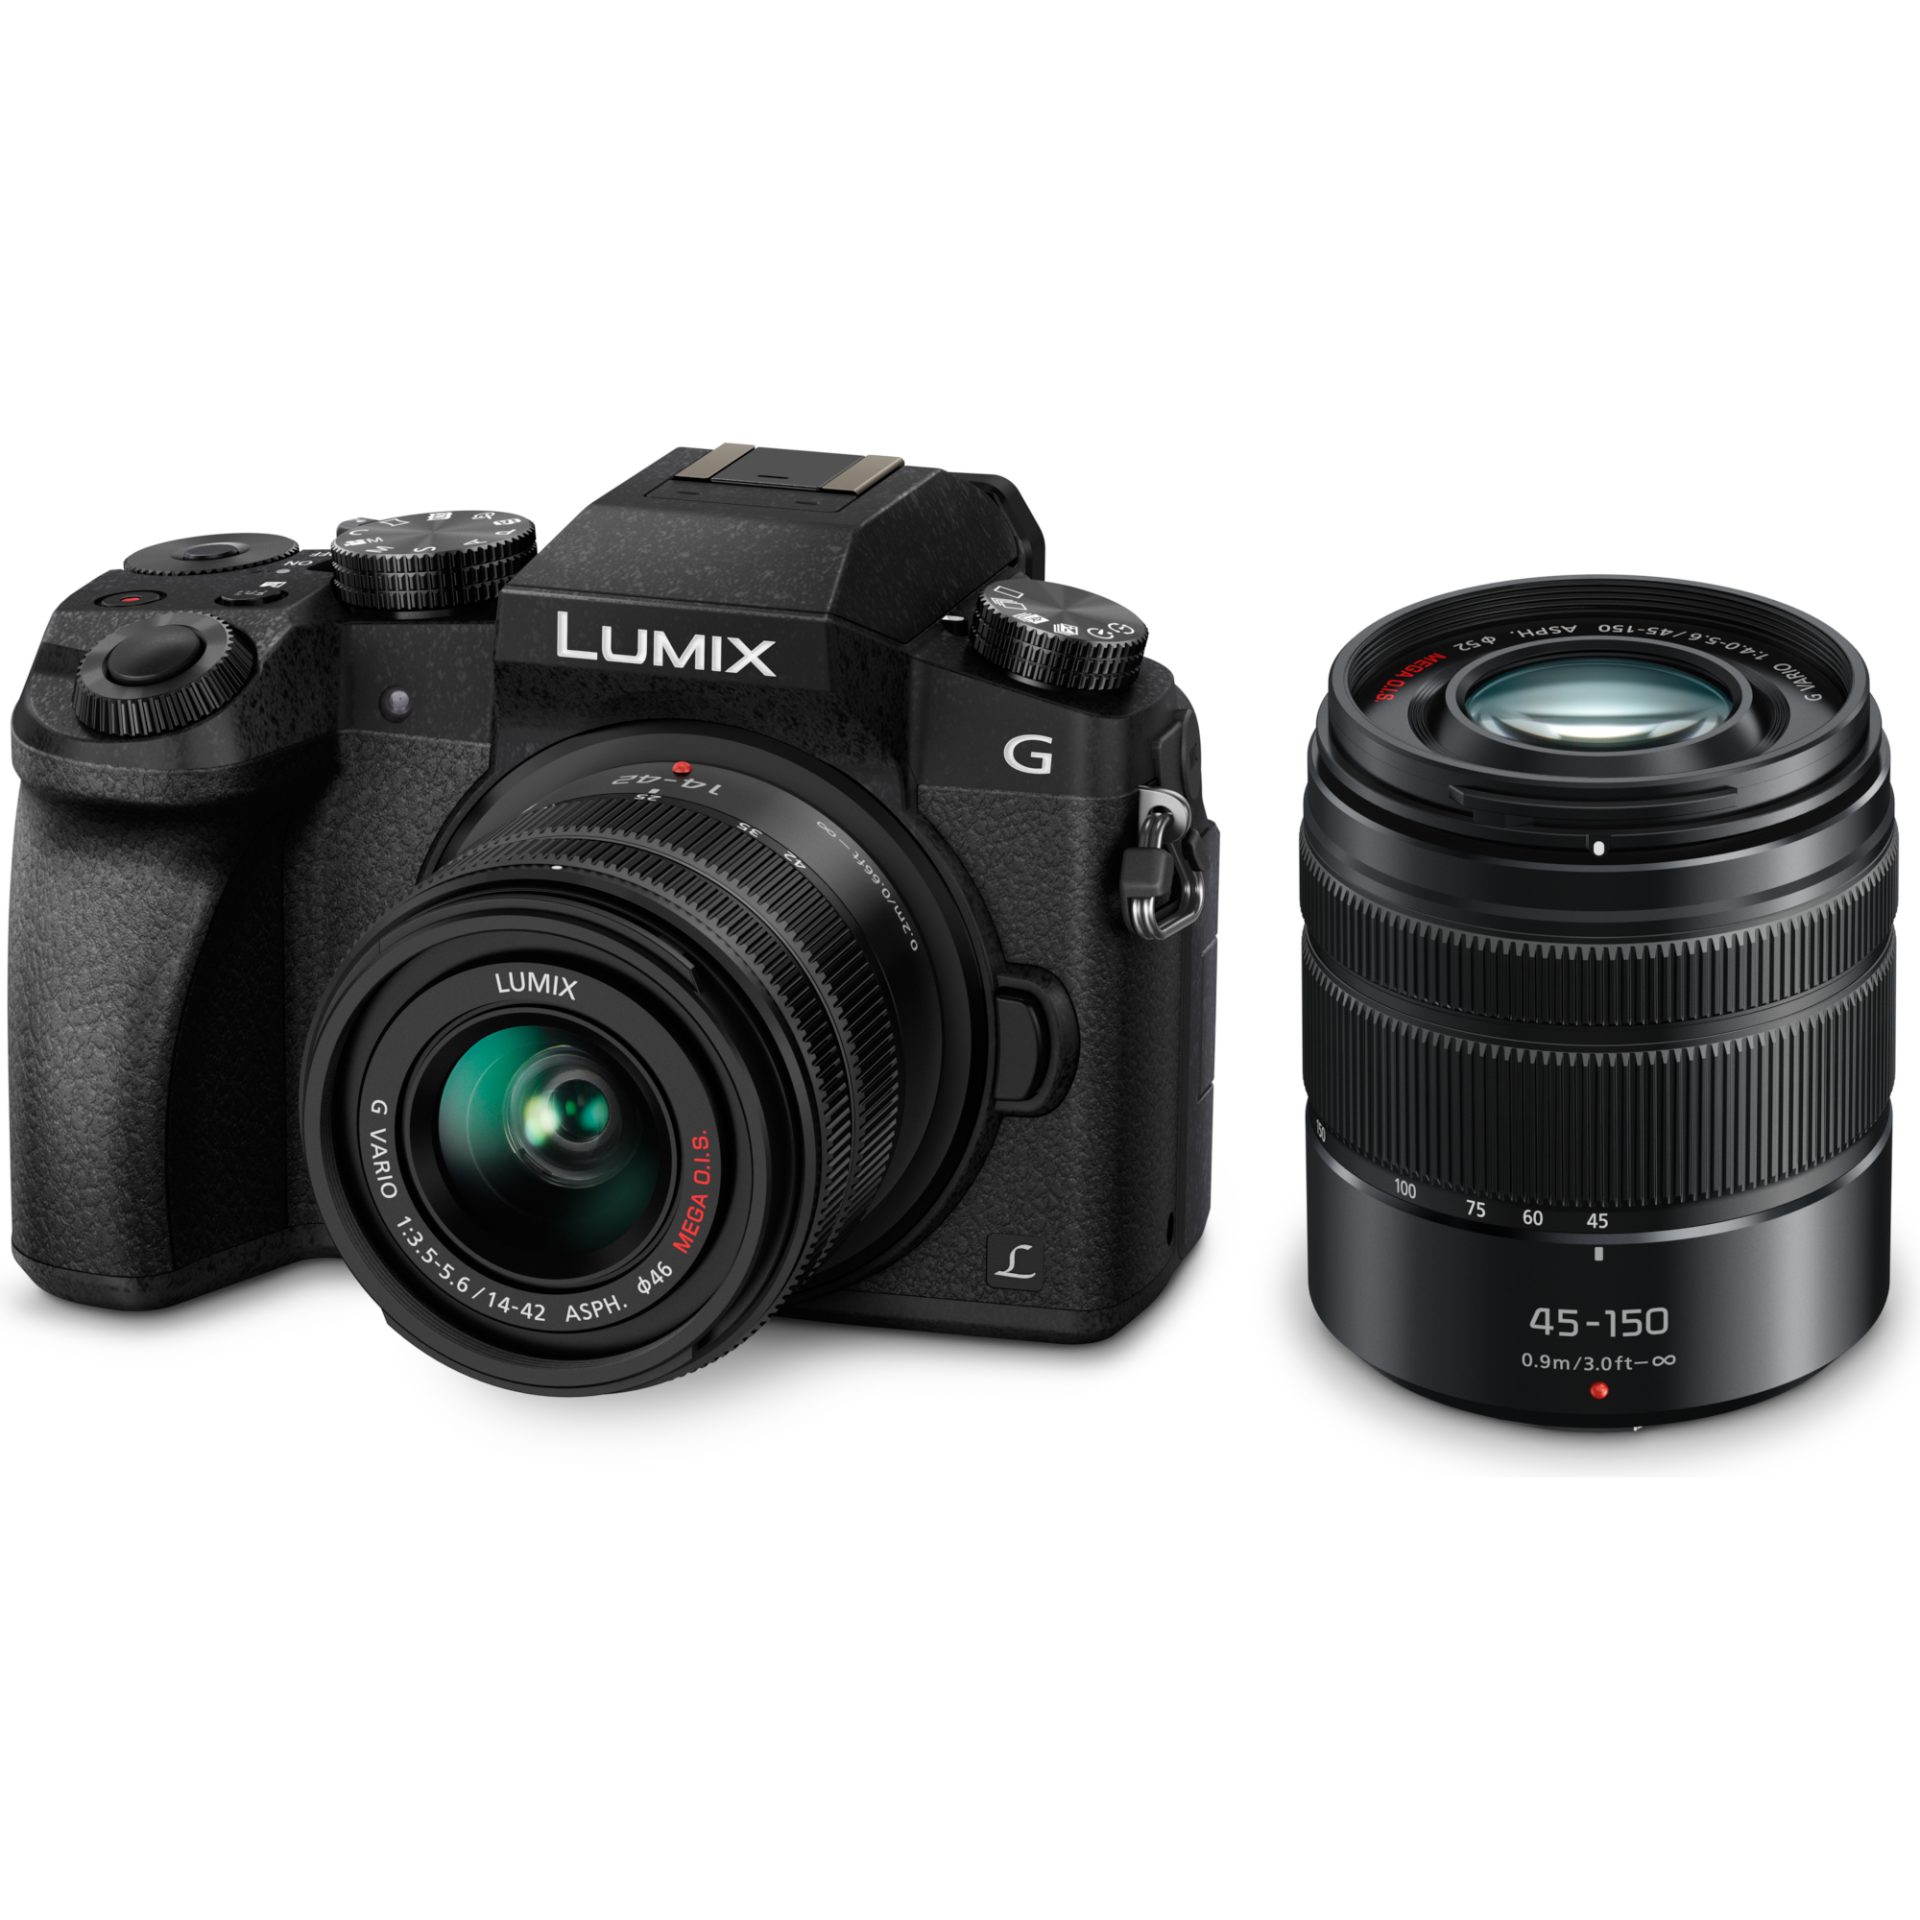 Panasonic DMC-G7W Lumix bezzrcadlový digitální fotoaparát + H-FS014042E 14-42mm, F3.5–F5.6 + H-FS45150 45–150mm, F4.0-F5.6 (Live MOS 16MP, 4K), černá